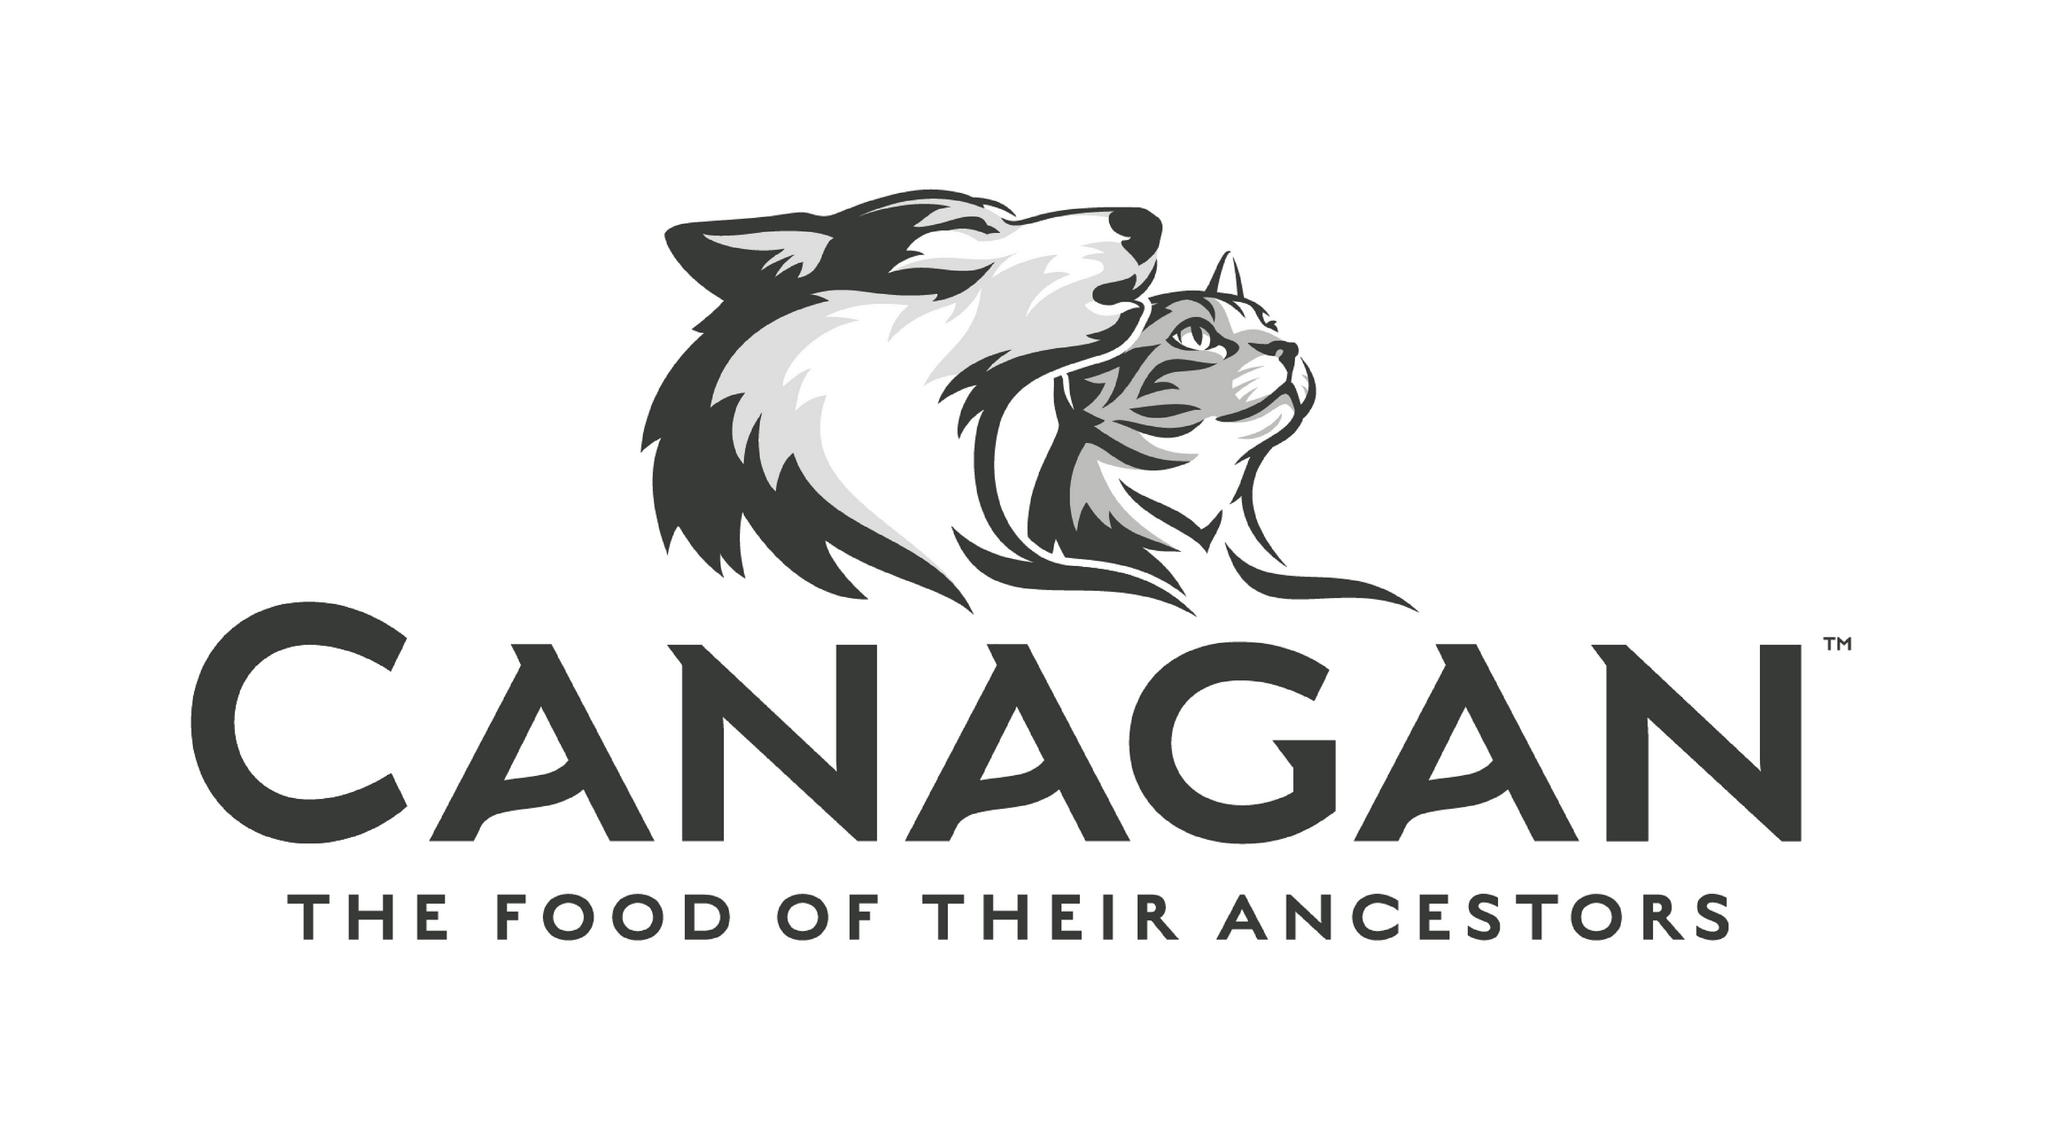 De geweldige hoogwaardige voedingslijn van Canagan is bekend om zijn graanvrije producten. Topkwaliteit uit Engeland.